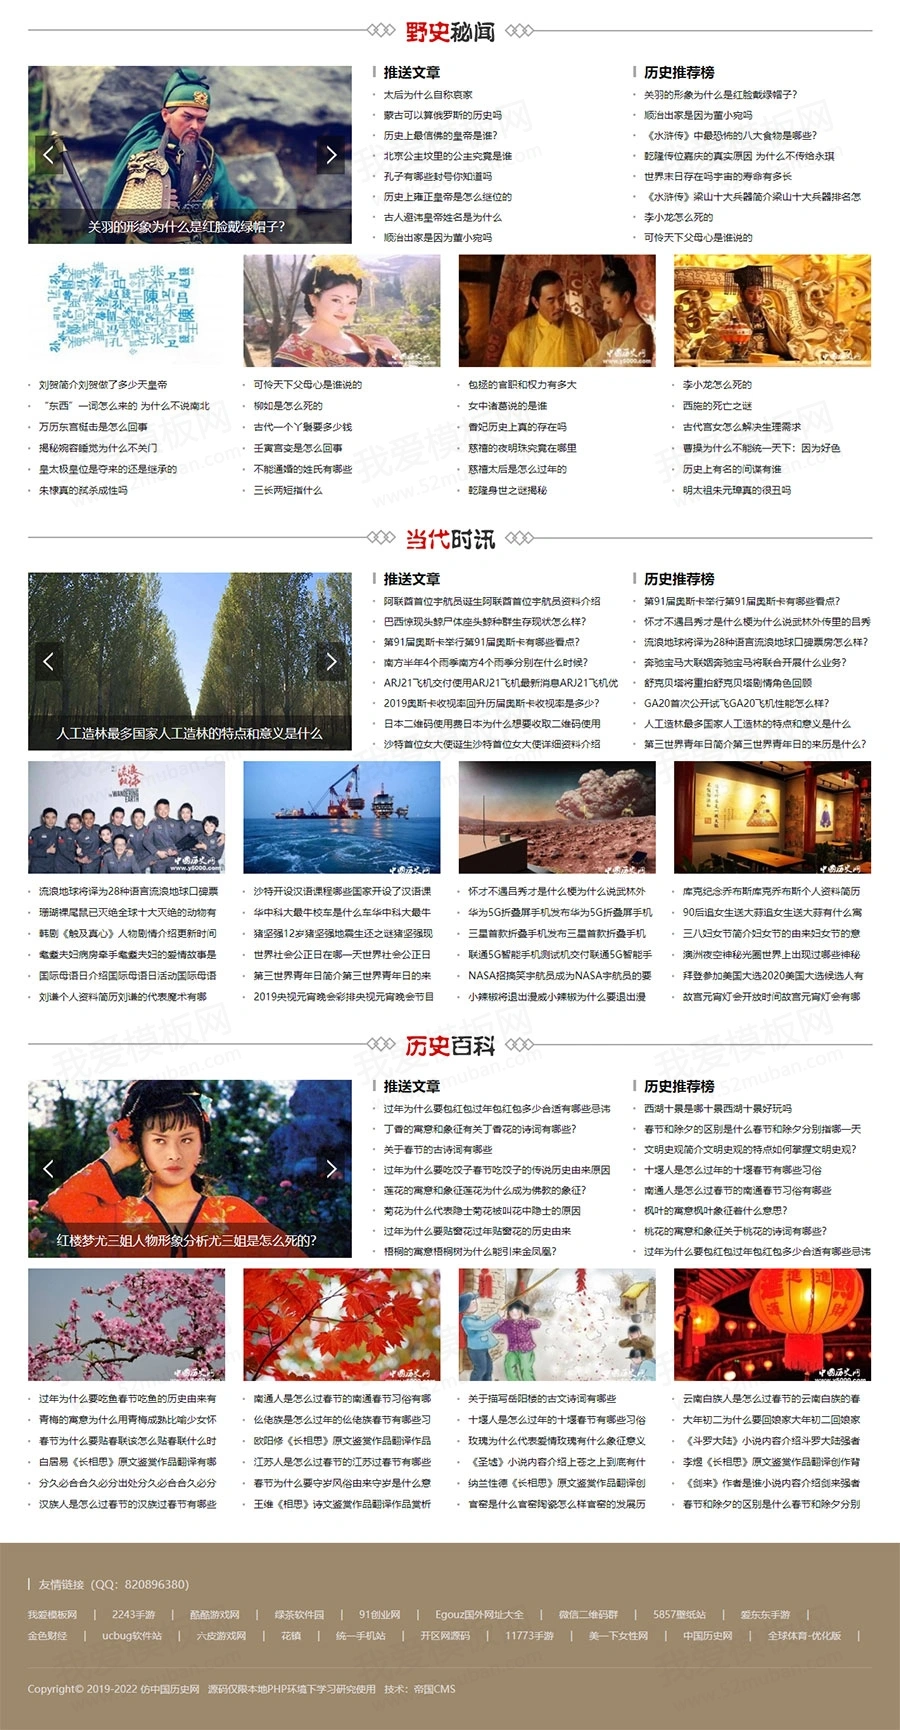 仿《中国历史网》源码 漂亮简洁历史故事人物网站模板 帝国cms内核